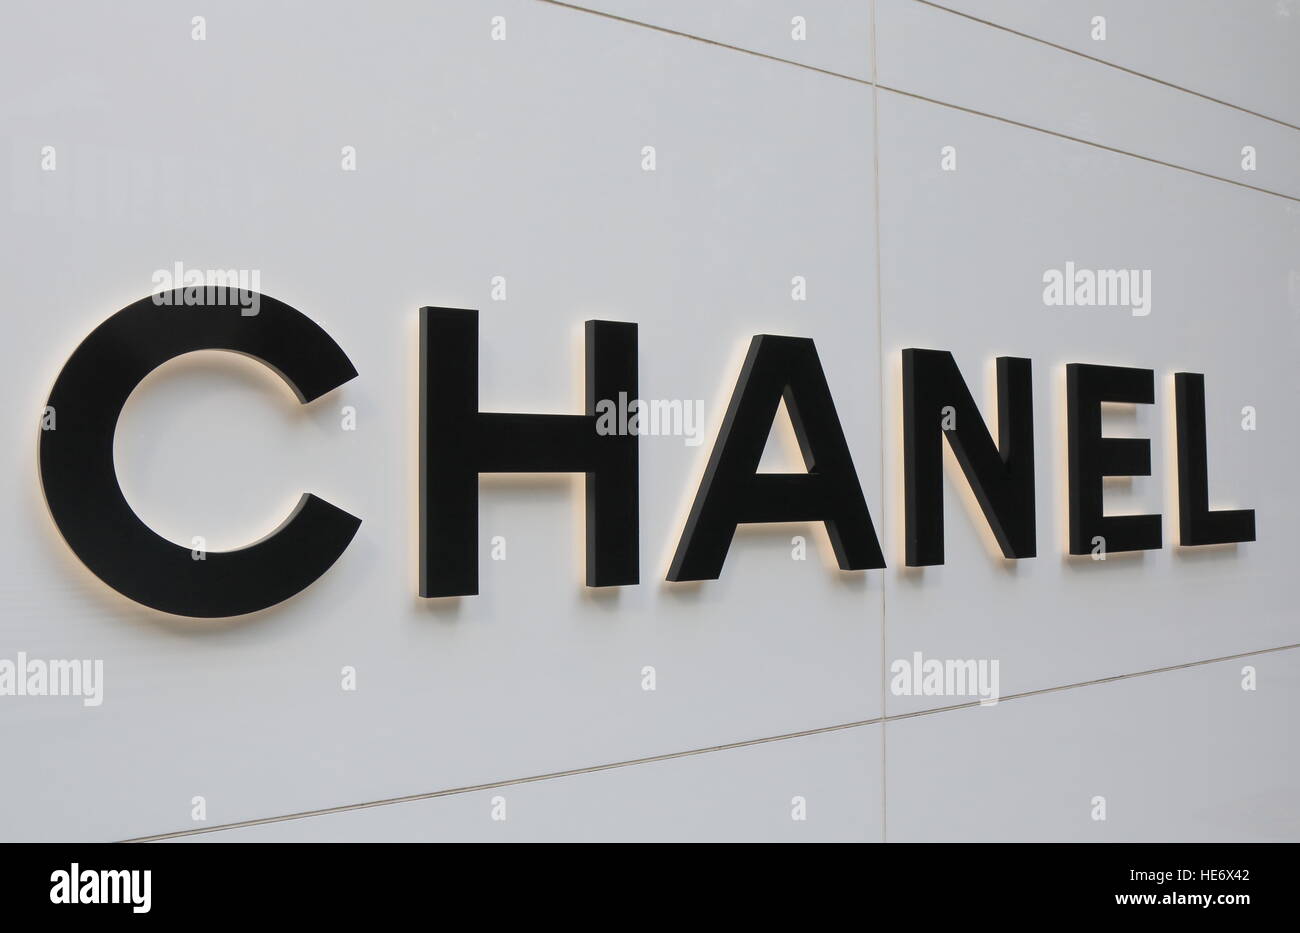 Chanel-Mode-Marken-Logo. Chanel ist ein französischer privat gehaltenen  Unternehmen, das spezialisiert auf-to-Wear Kleidung, Luxusgüter und Mode-Accessoires  Stockfotografie - Alamy